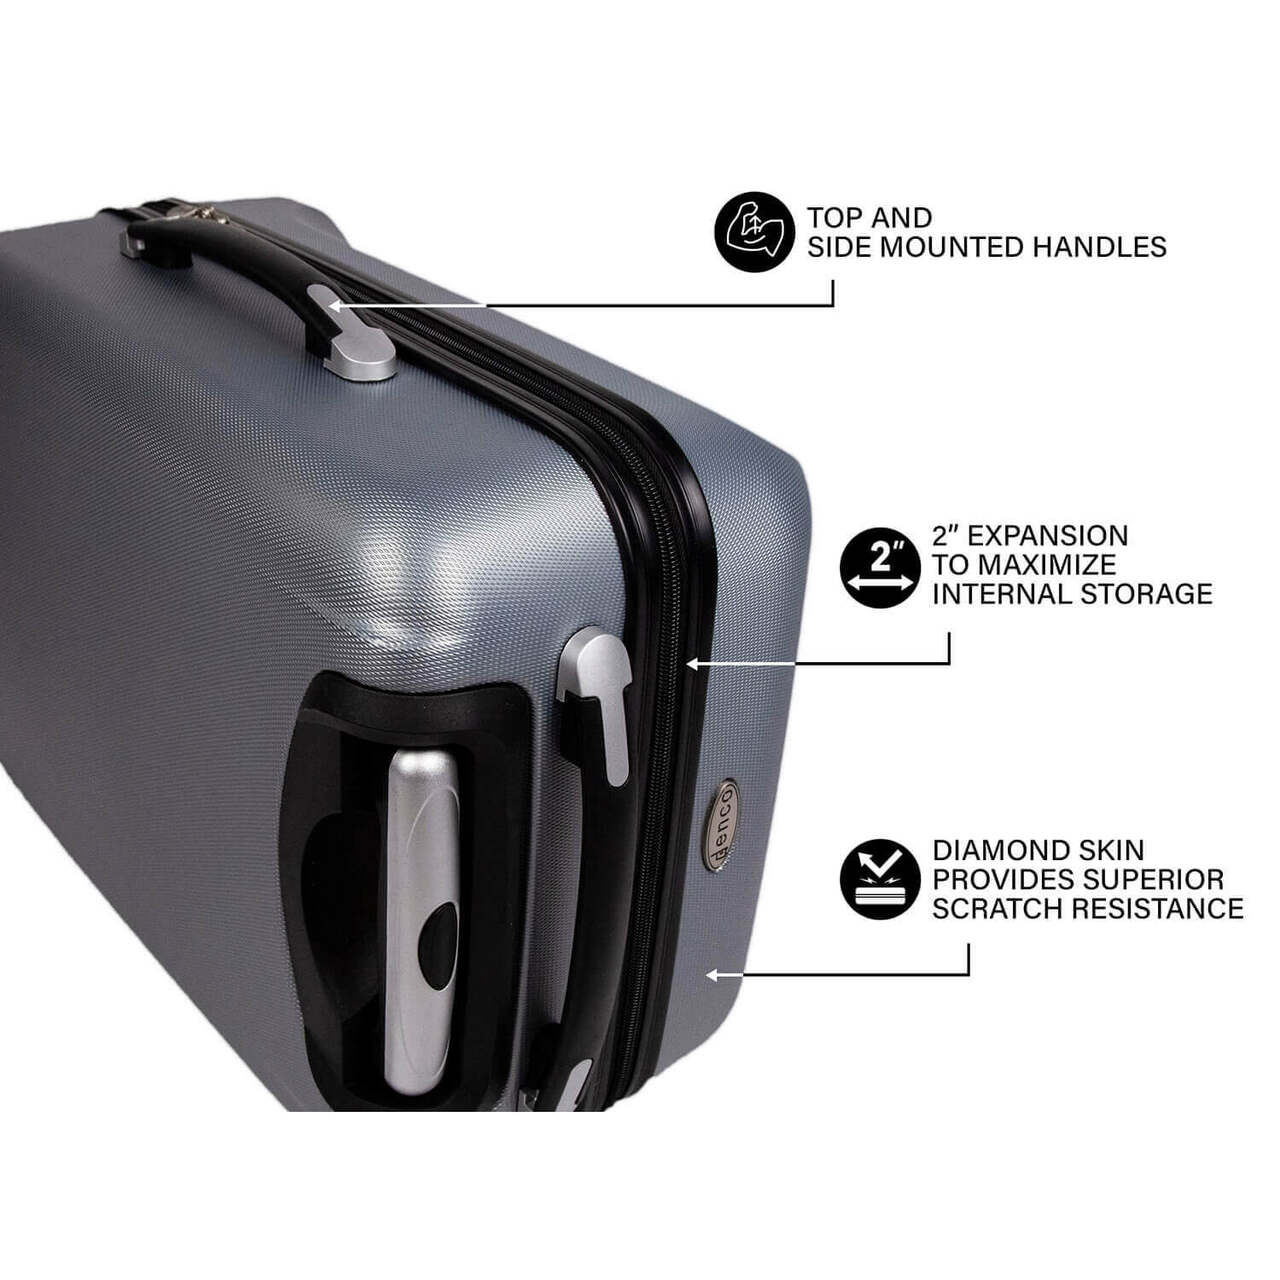 Phoenix Suns 20" Hardcase Luggage Carry-on Spinner